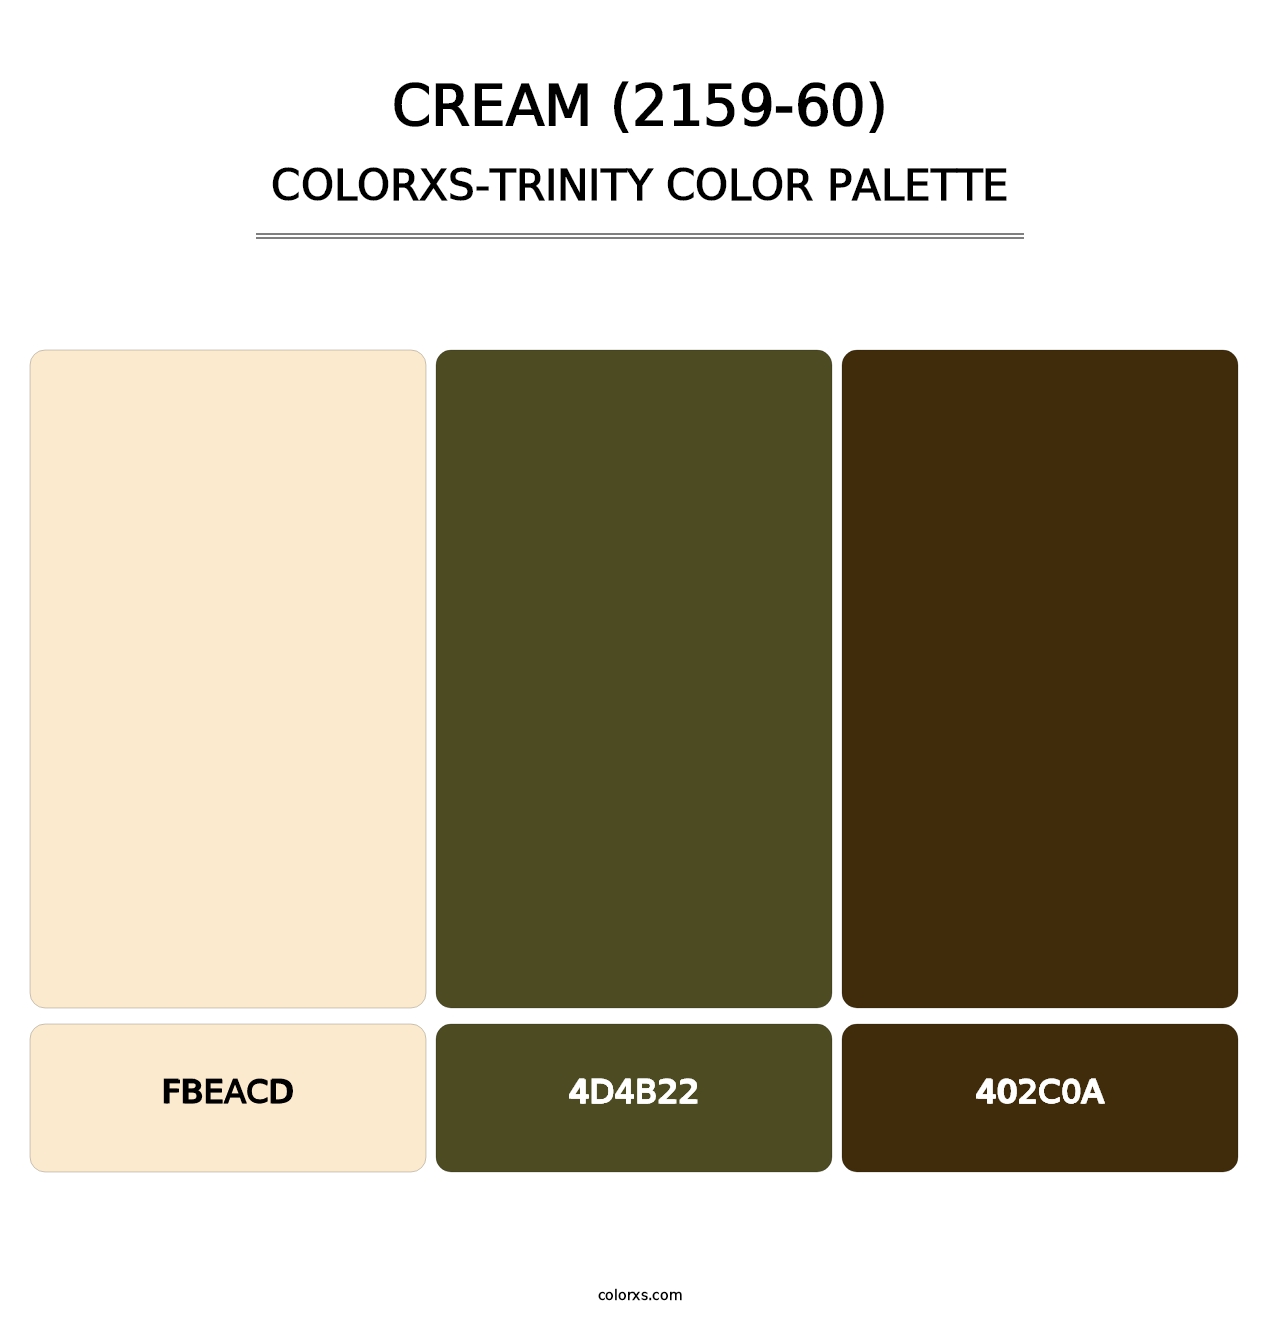 Cream (2159-60) - Colorxs Trinity Palette